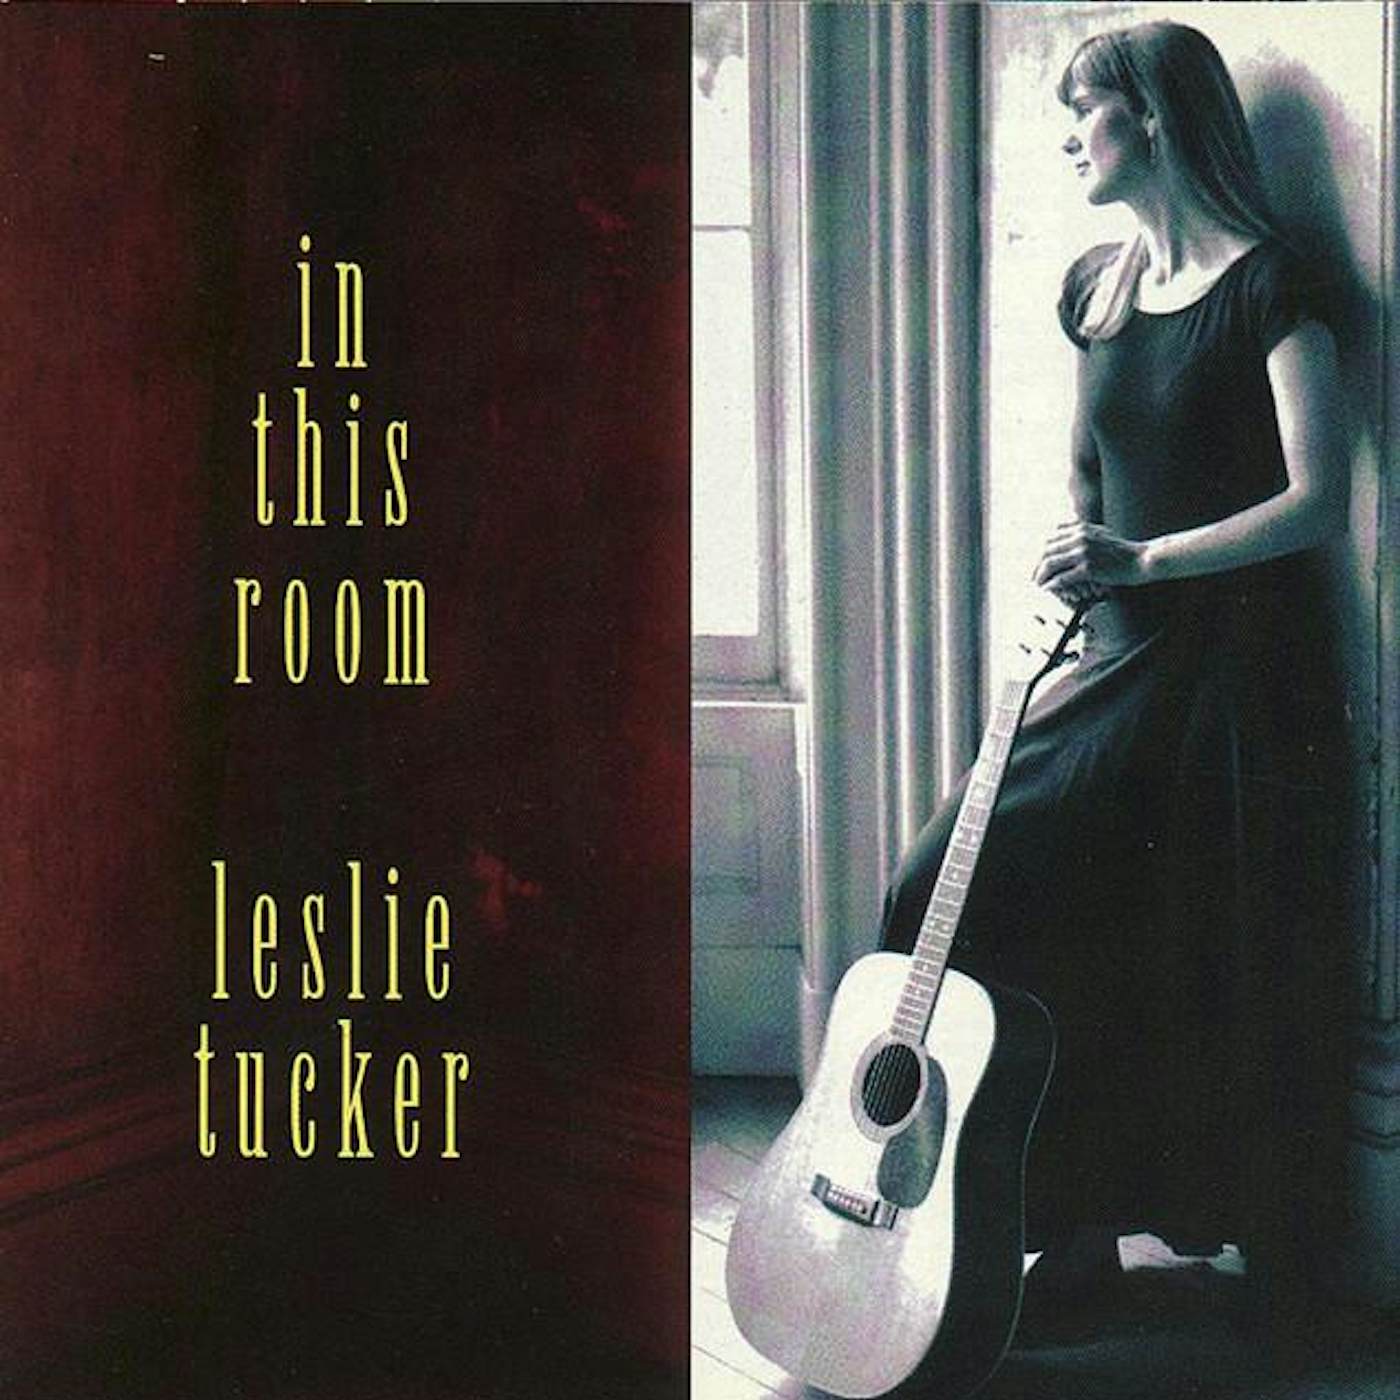 Leslie Tucker